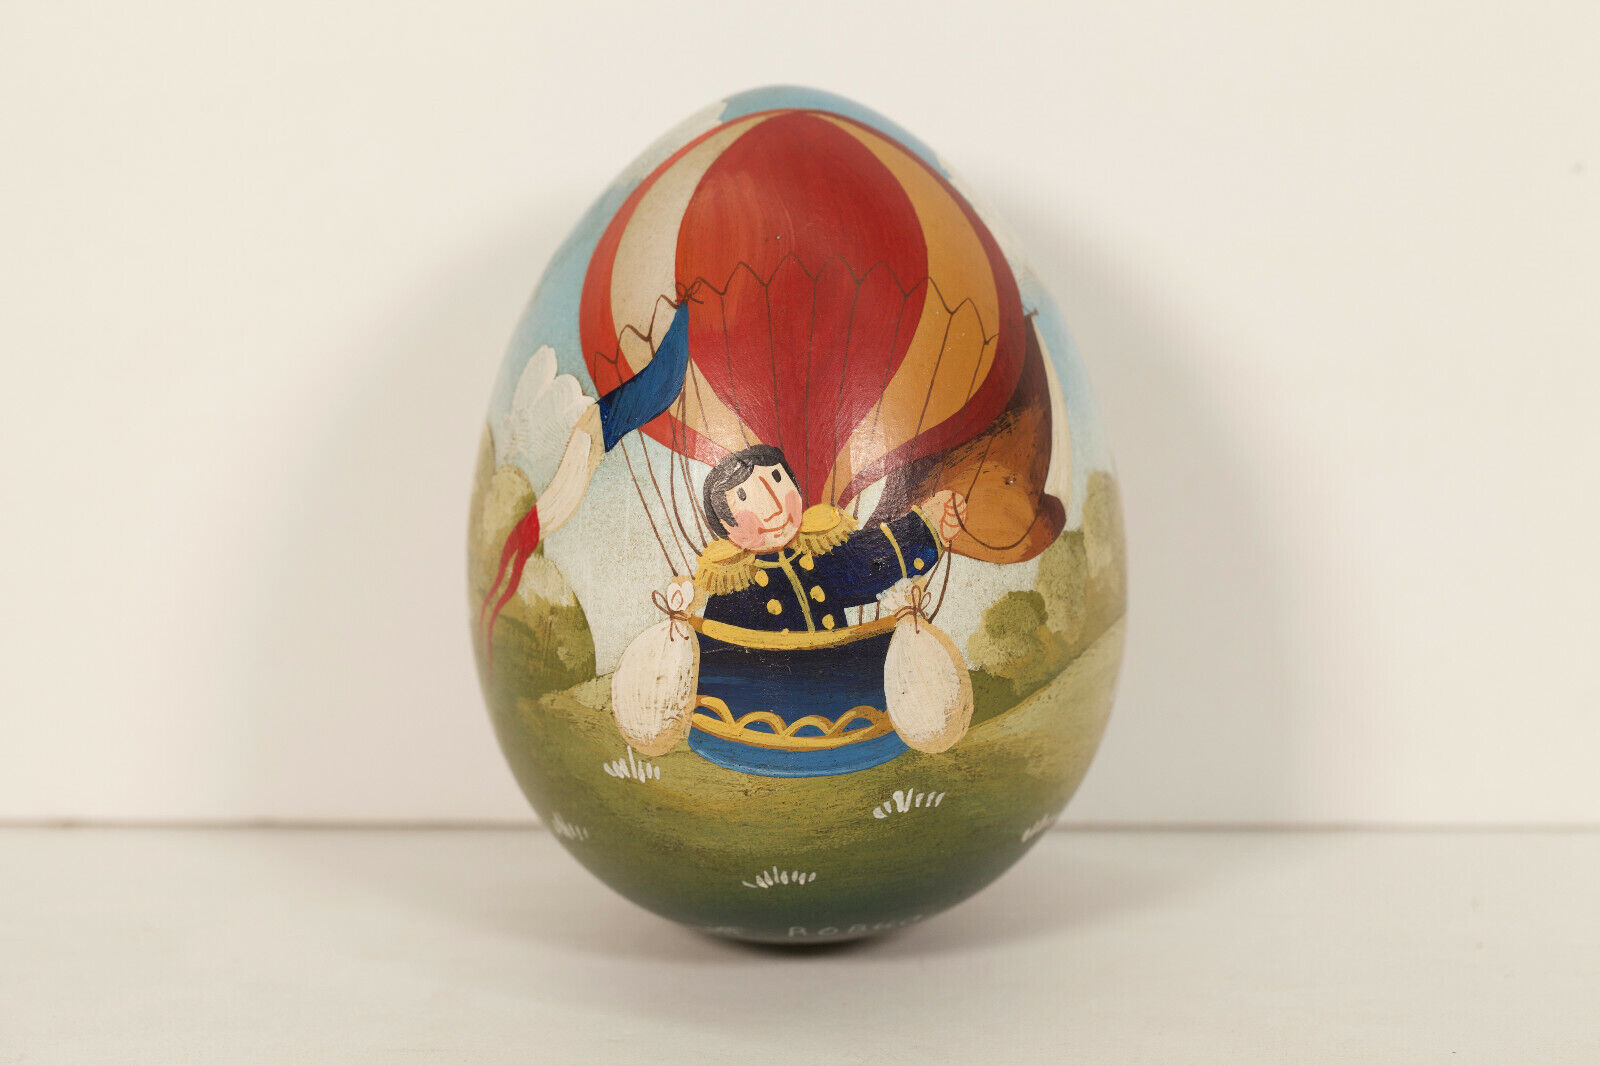 Unique French Vintage Handpainted Wooden Egg by Jacques Robuchon, Captain.